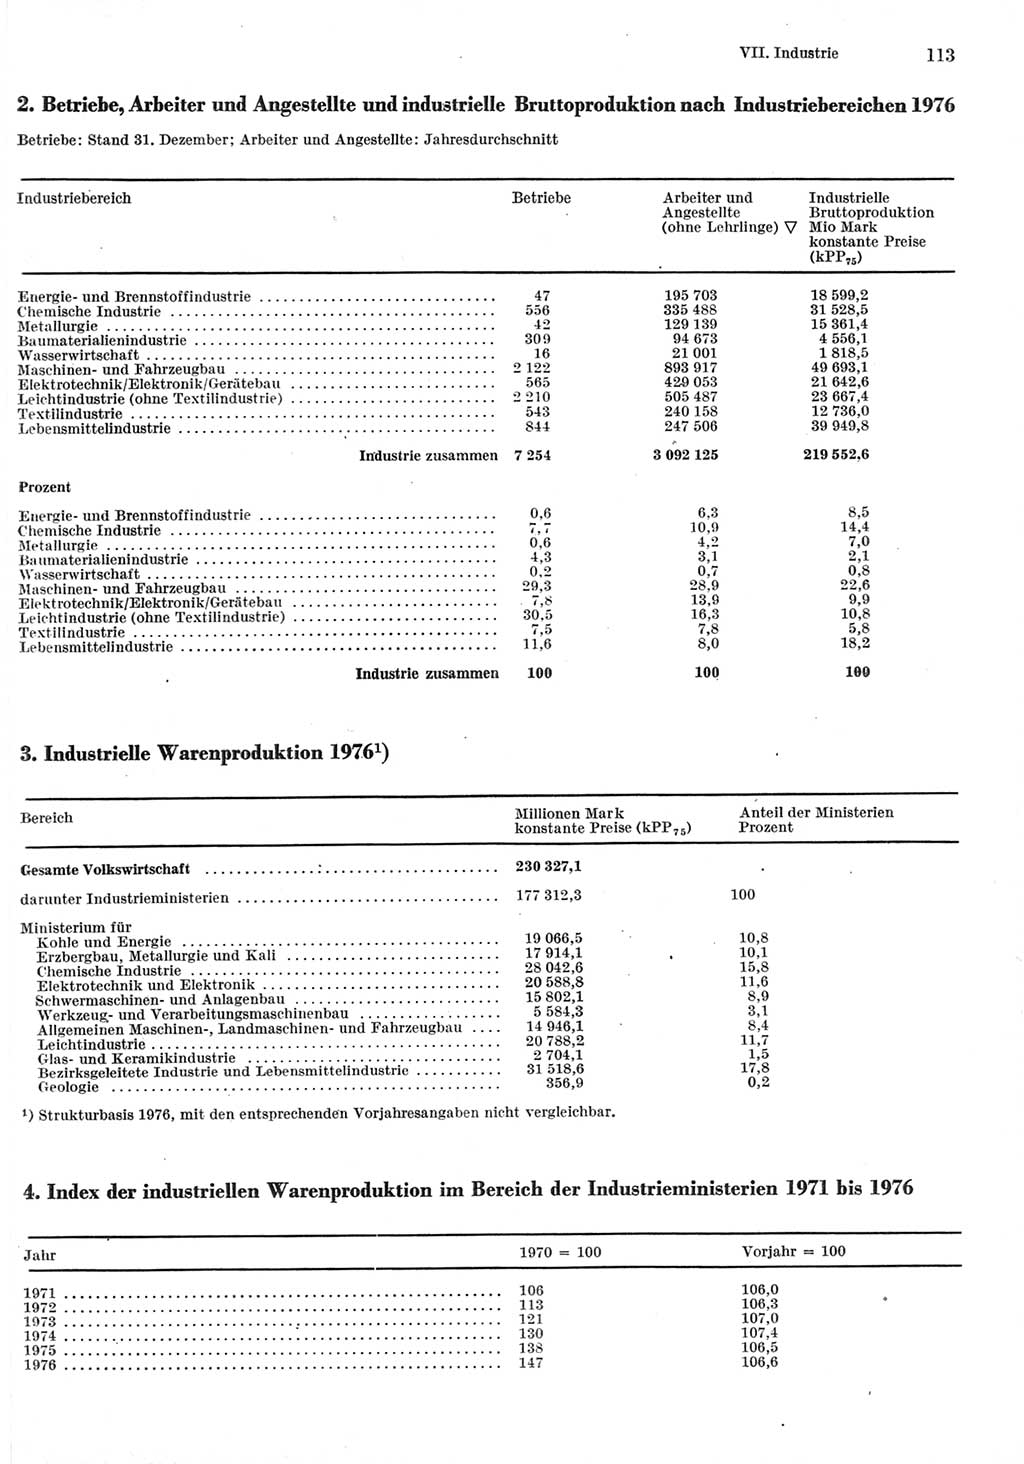 Statistisches Jahrbuch der Deutschen Demokratischen Republik (DDR) 1977, Seite 113 (Stat. Jb. DDR 1977, S. 113)